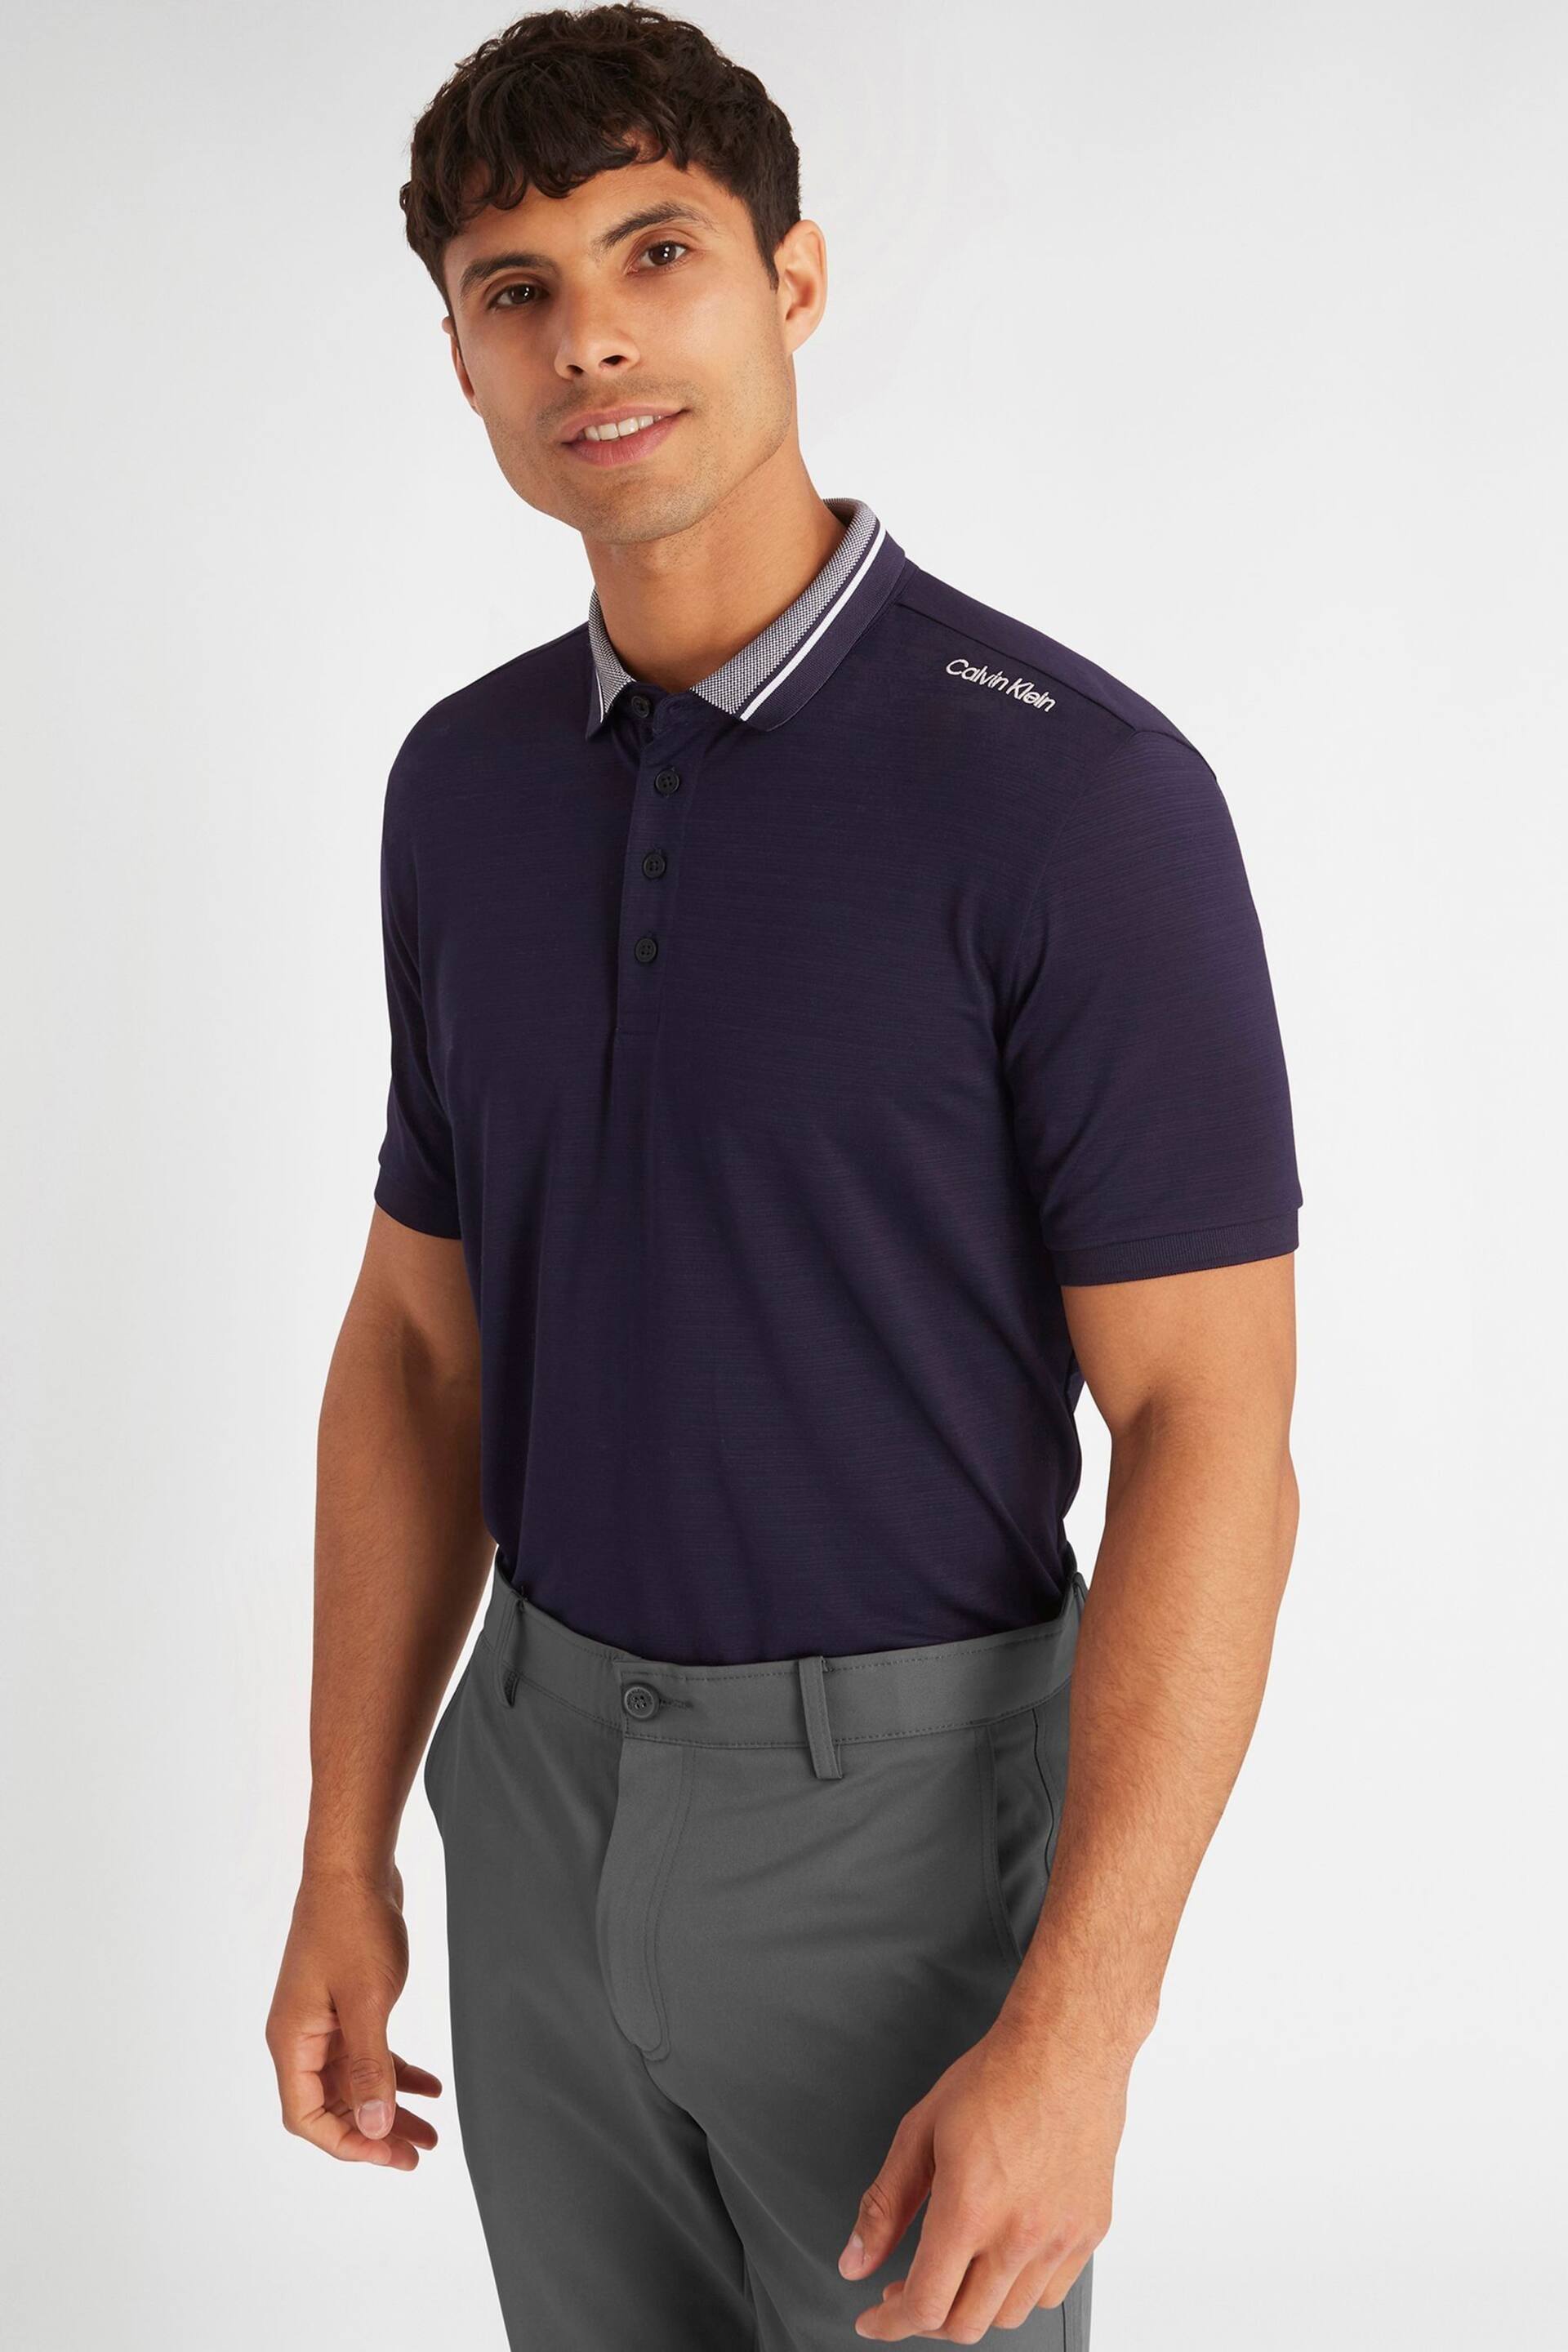 Calvin Klein Golf Navy Parramore Polo Shirt - Image 1 of 7